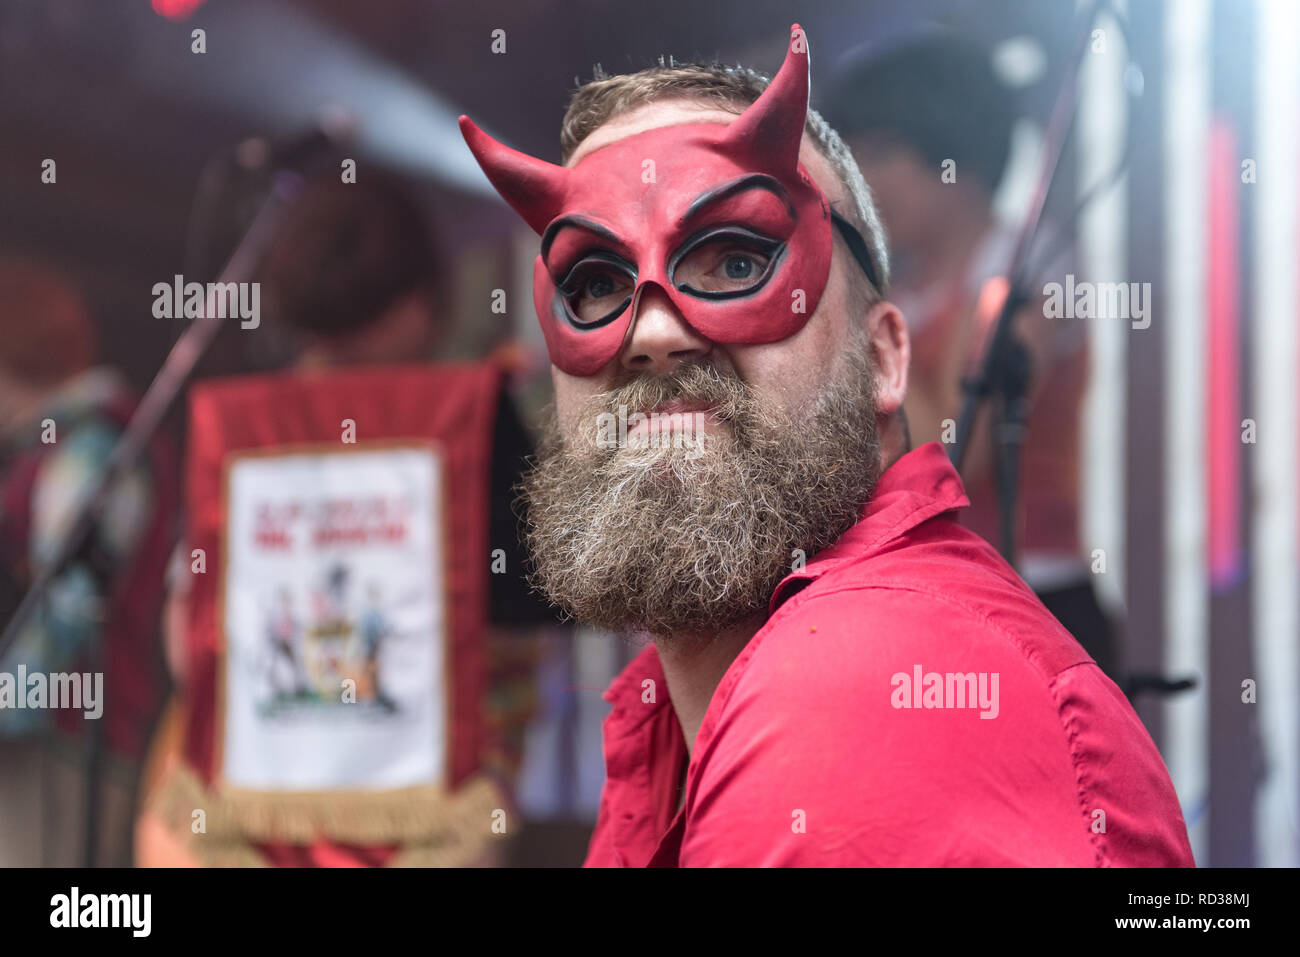 Uomo vestito come il diavolo a suonare il violino a un festival di musica Foto Stock